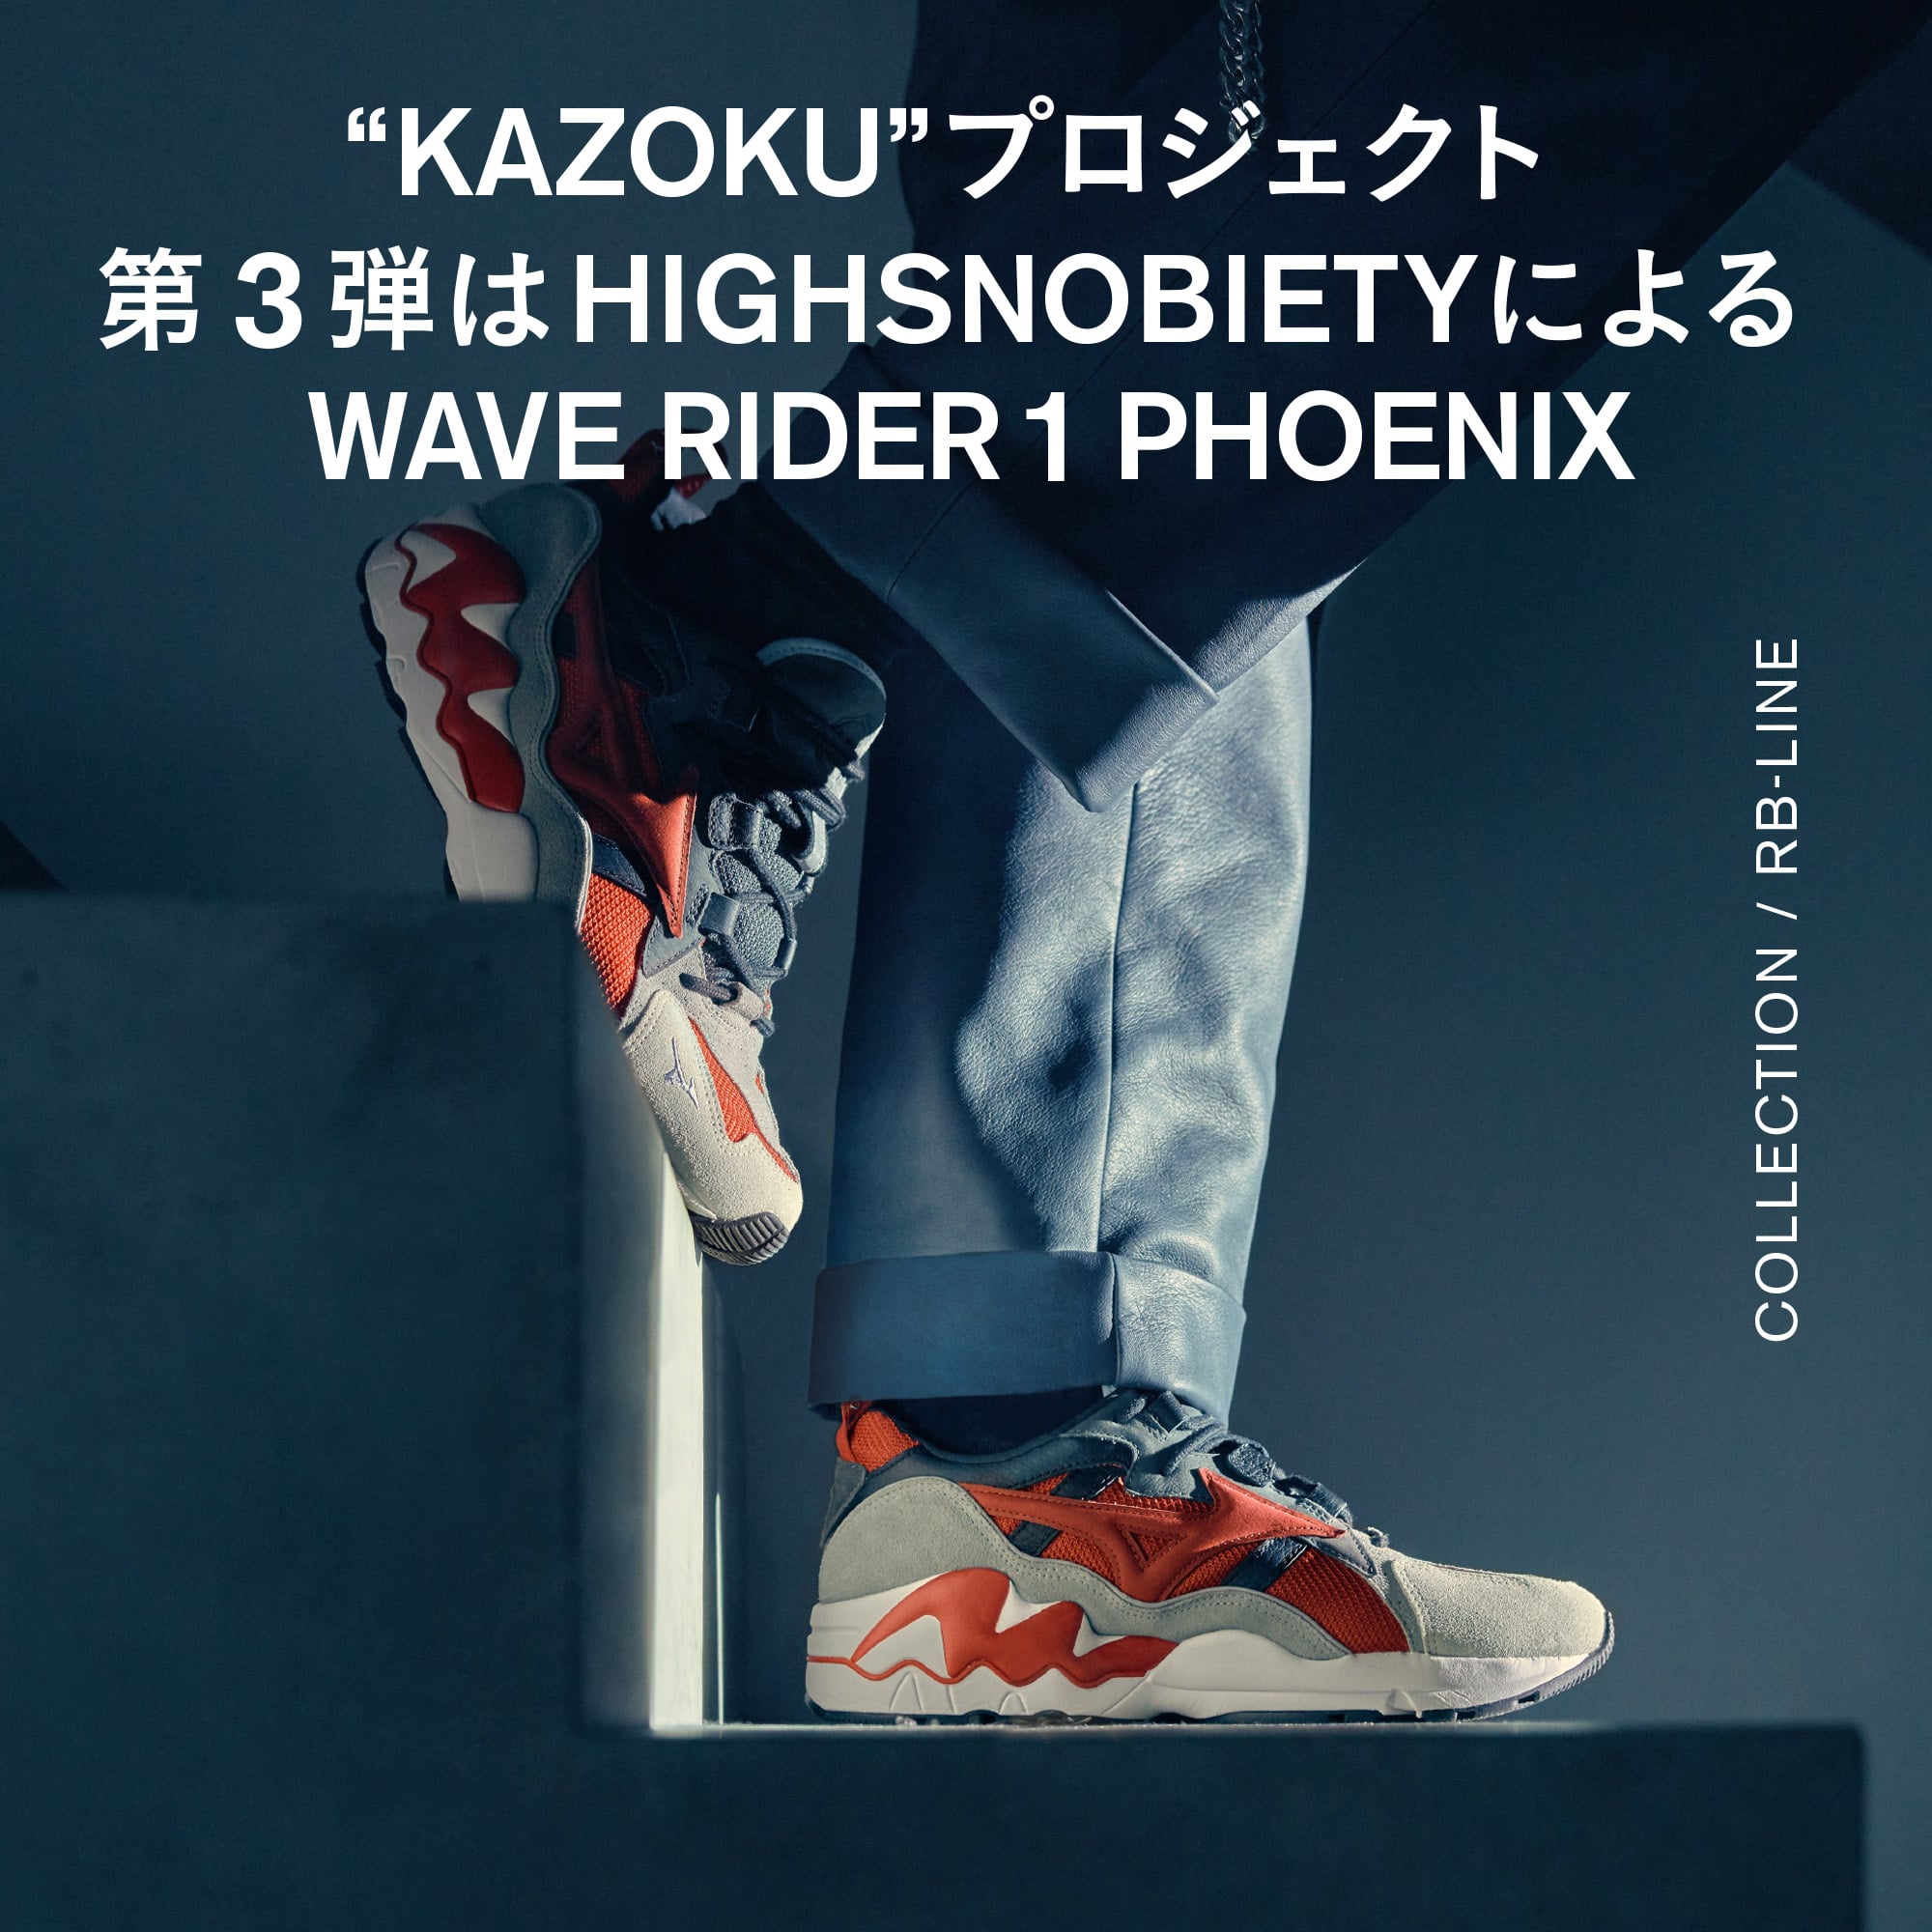 KAZOKU”プロジェクト第3弾はHighsnobietyによるWAVE RIDER 1 PHOENIX ...